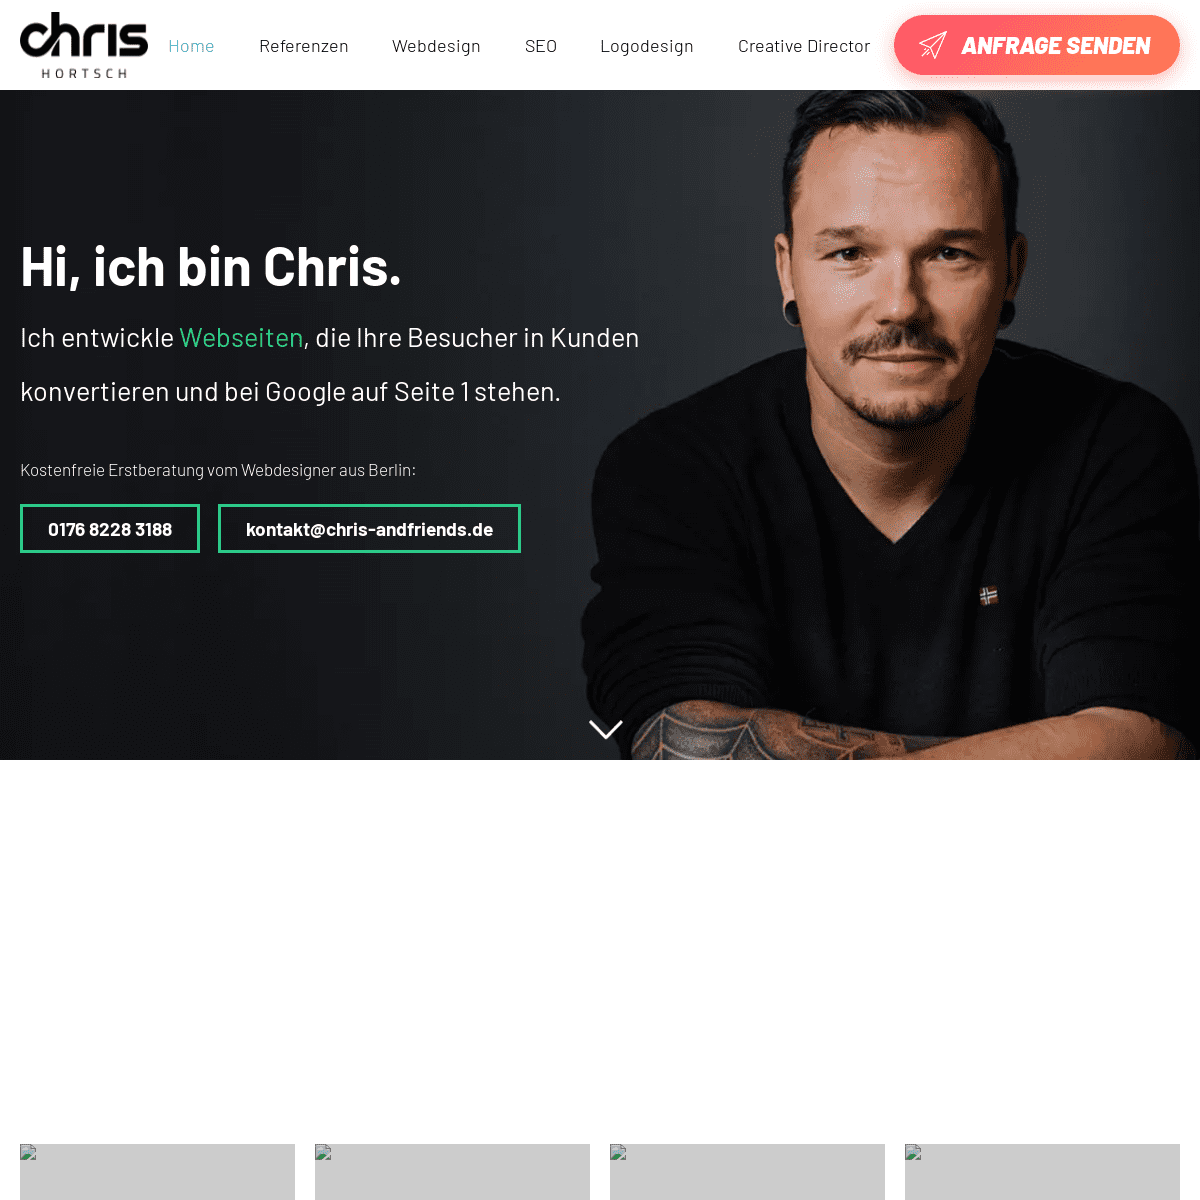 A complete backup of https://chris-hortsch.de